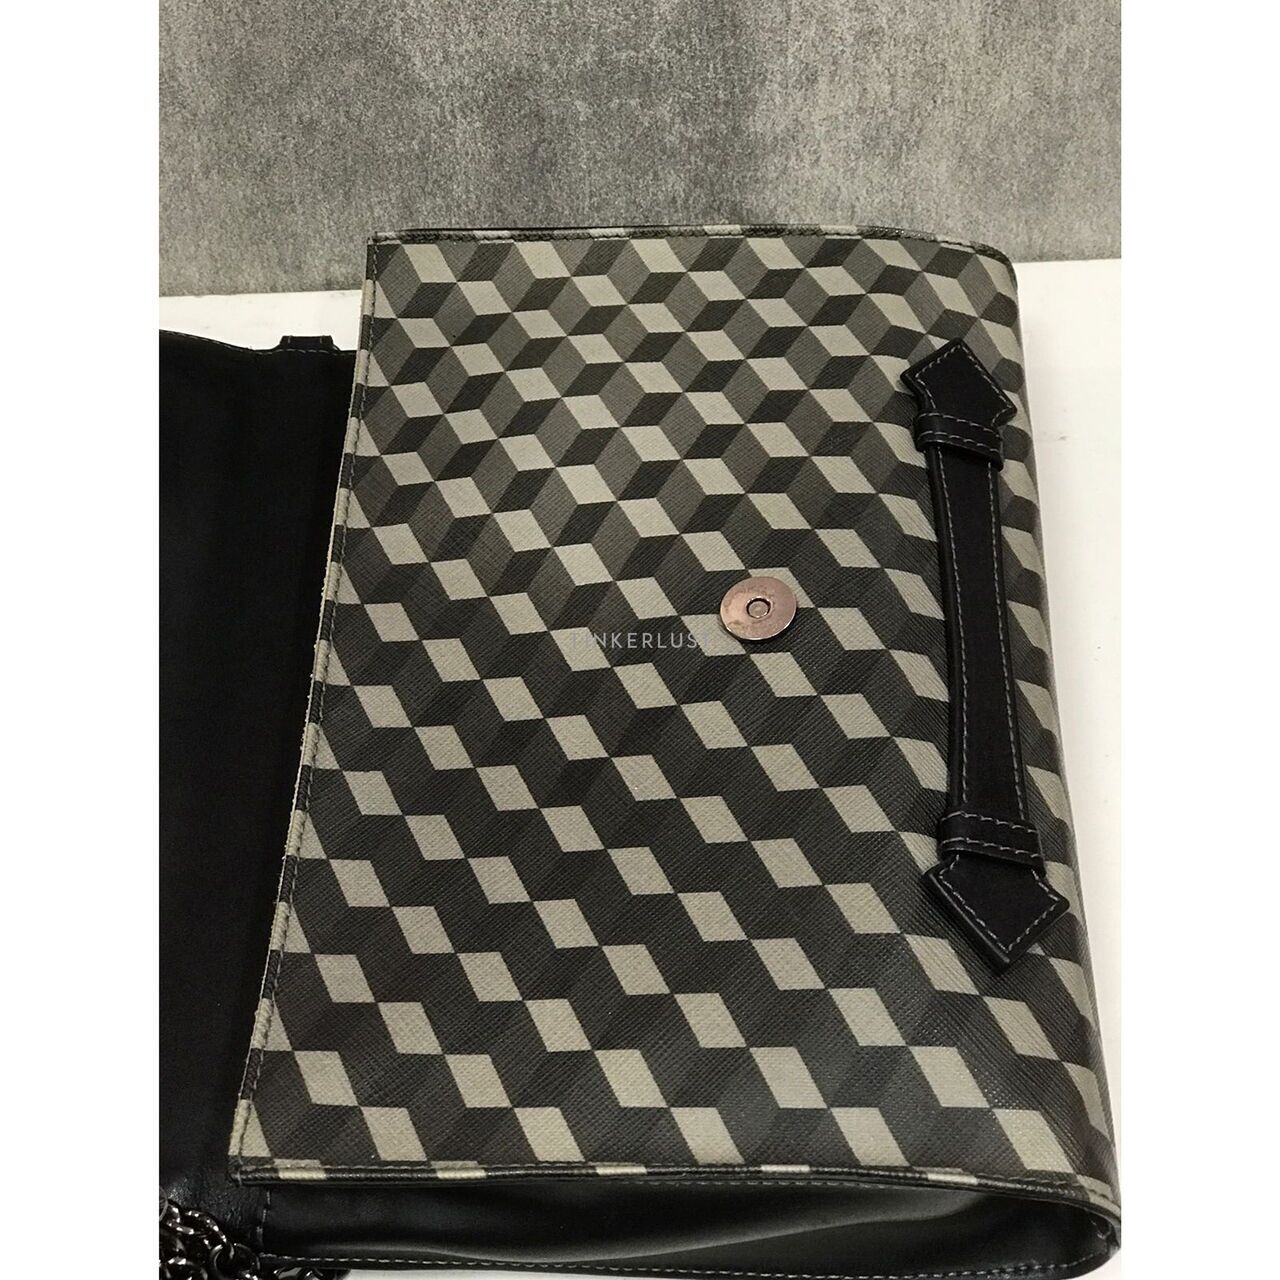 Loup Noir Black Leather Shoulder Bag